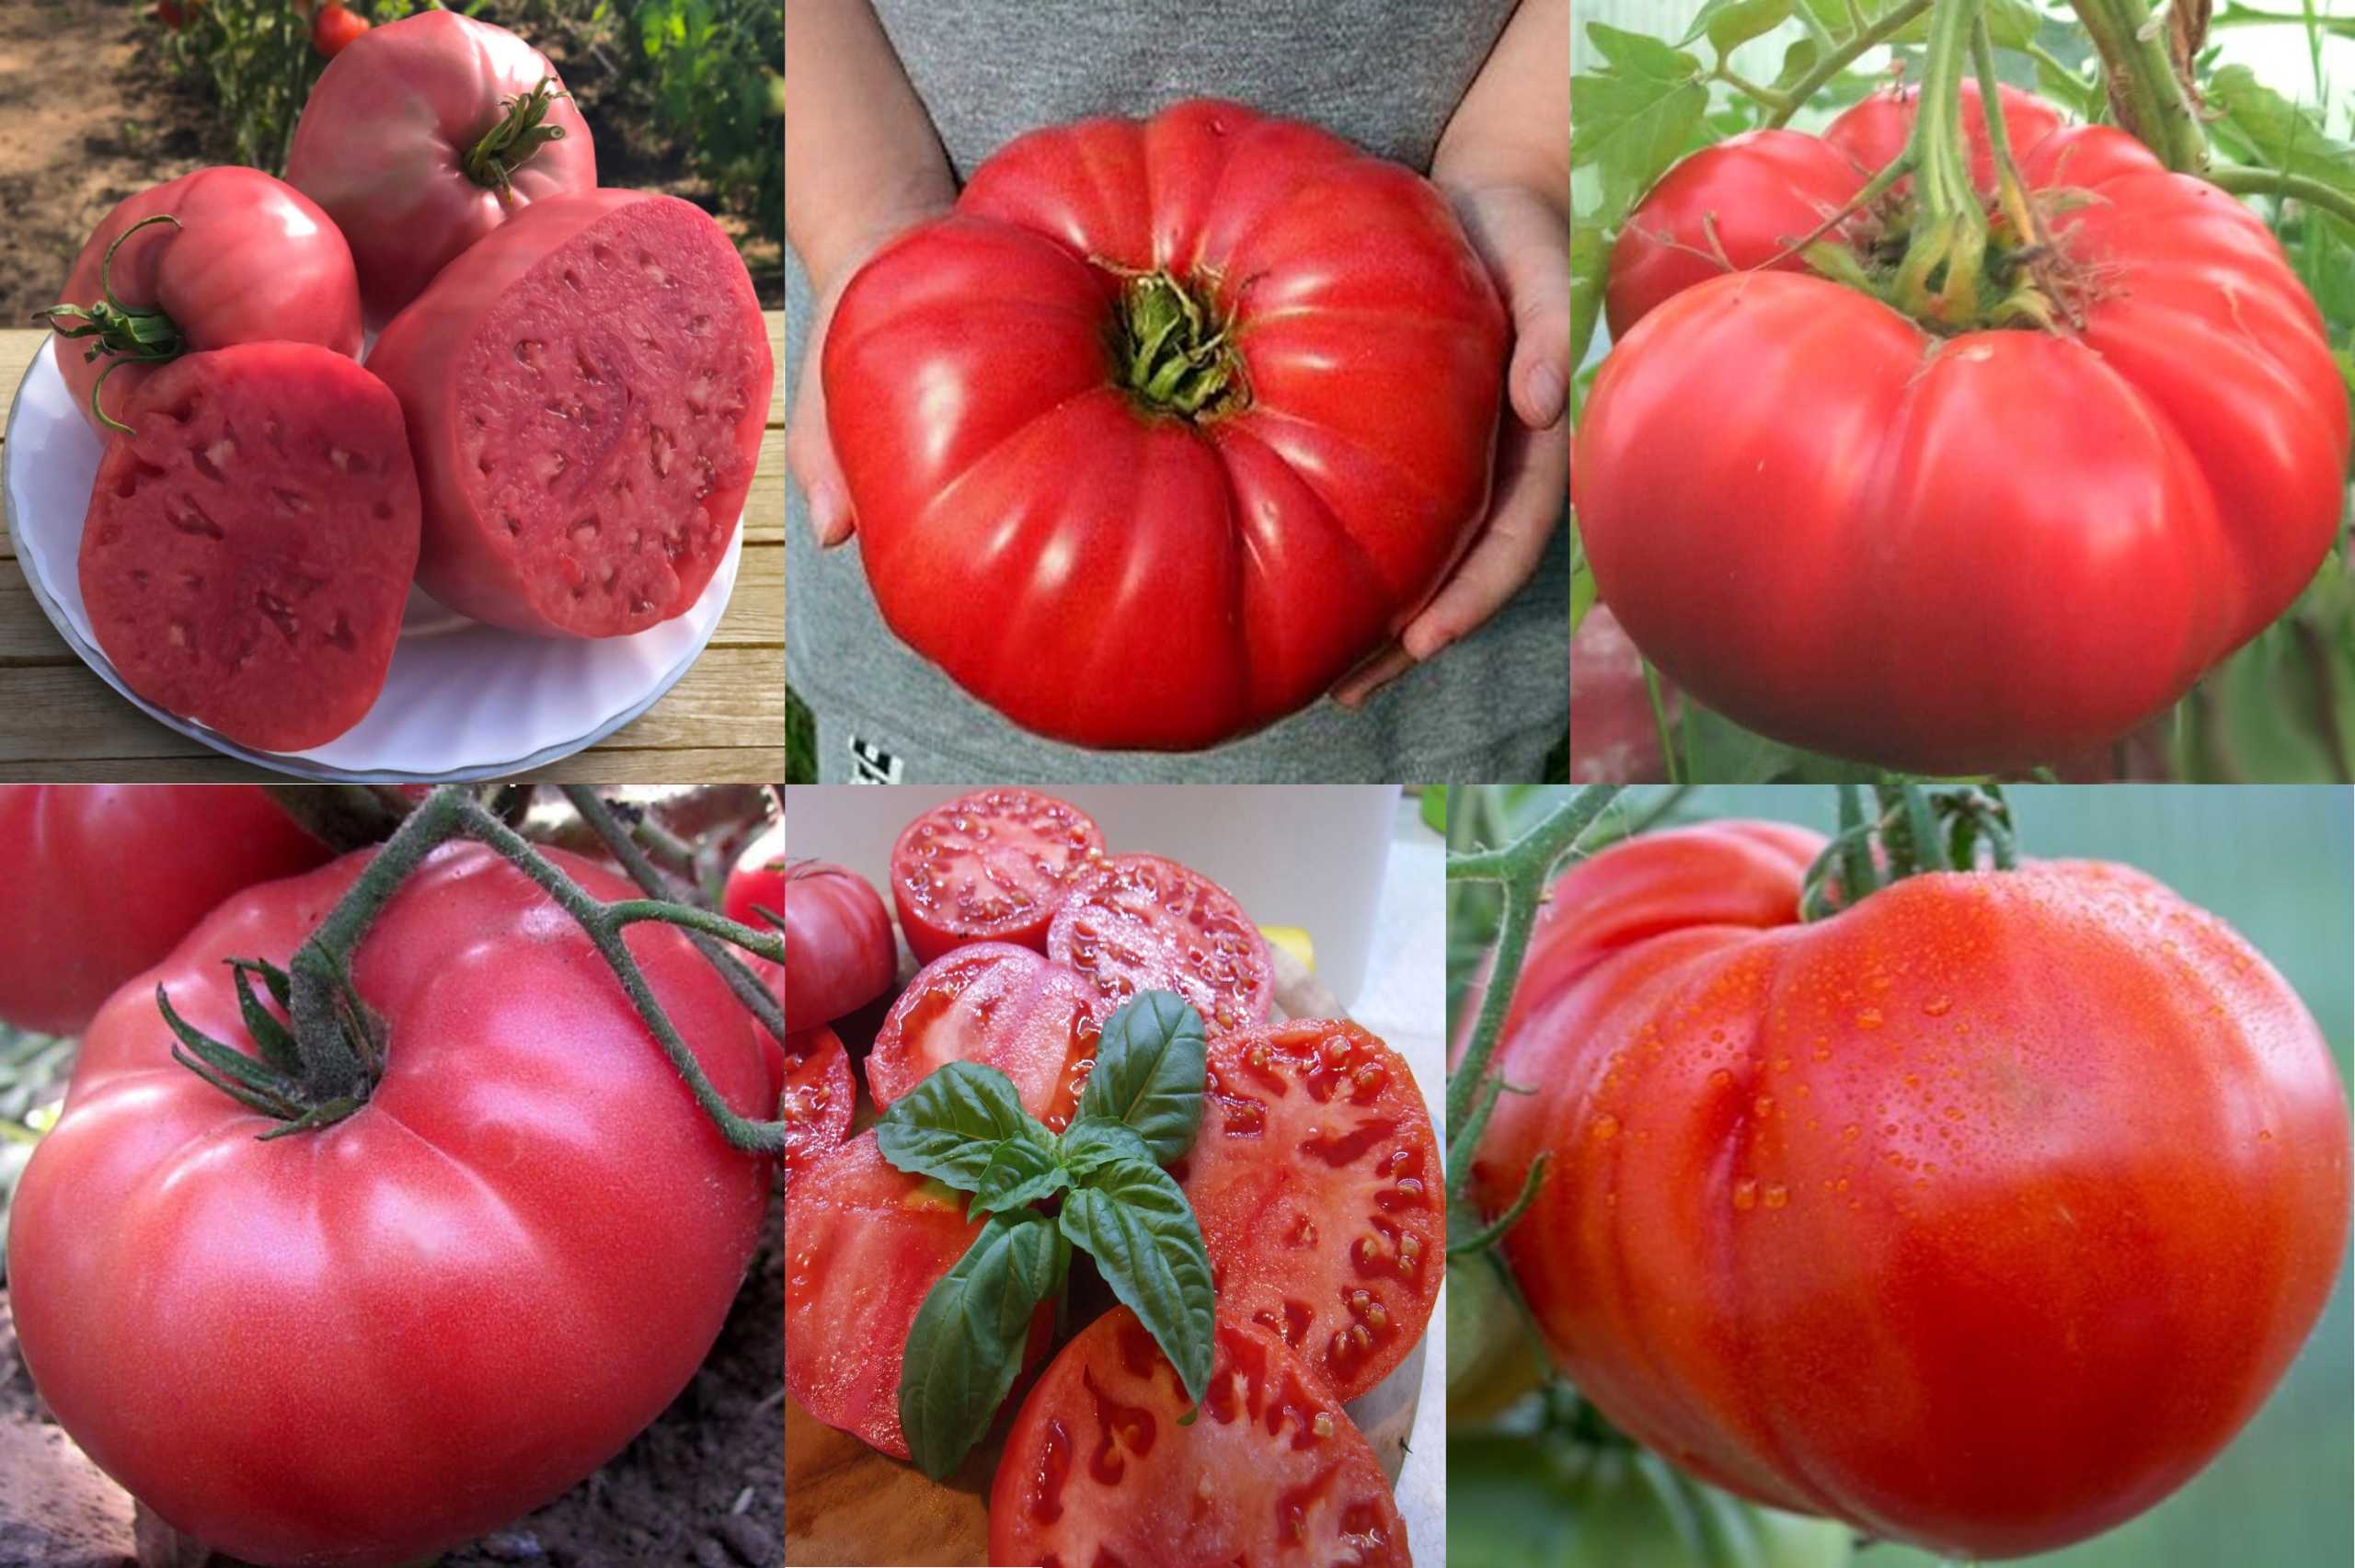 Рассадный культивар с самыми полезными плодами среди томатов — малиновый цвет: описание сорта